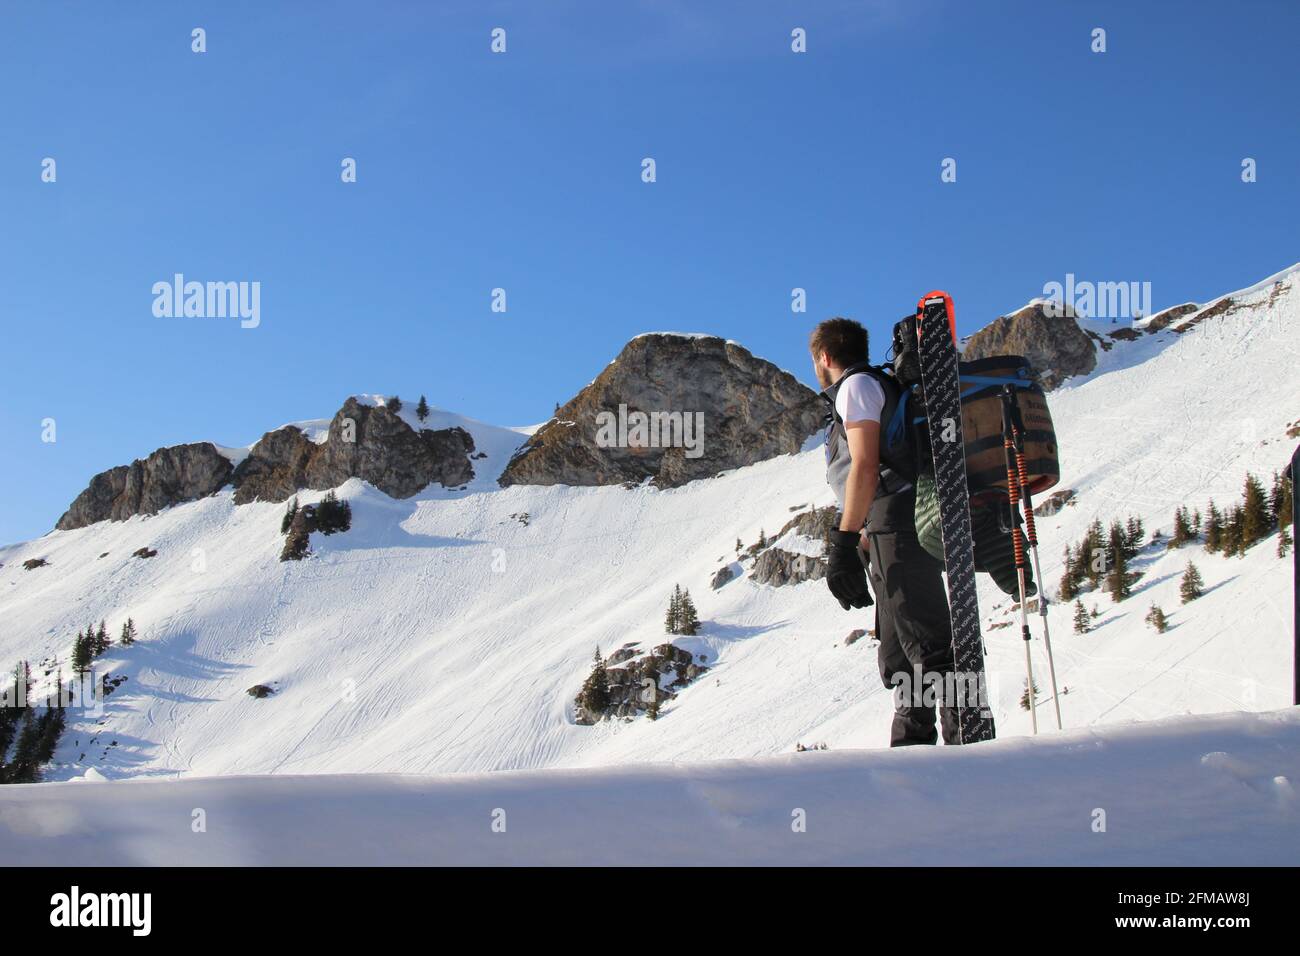 Uomo con barile di birra Mittenwald sulla schiena, sci da turismo, attrezzatura di fronte alla cima del Rotwandkopf (1, 858 m) Rotwand (1, 884 m) nelle montagne Mangfall, Spitzingsee, alta Baviera, Baviera, Germania, Foto Stock